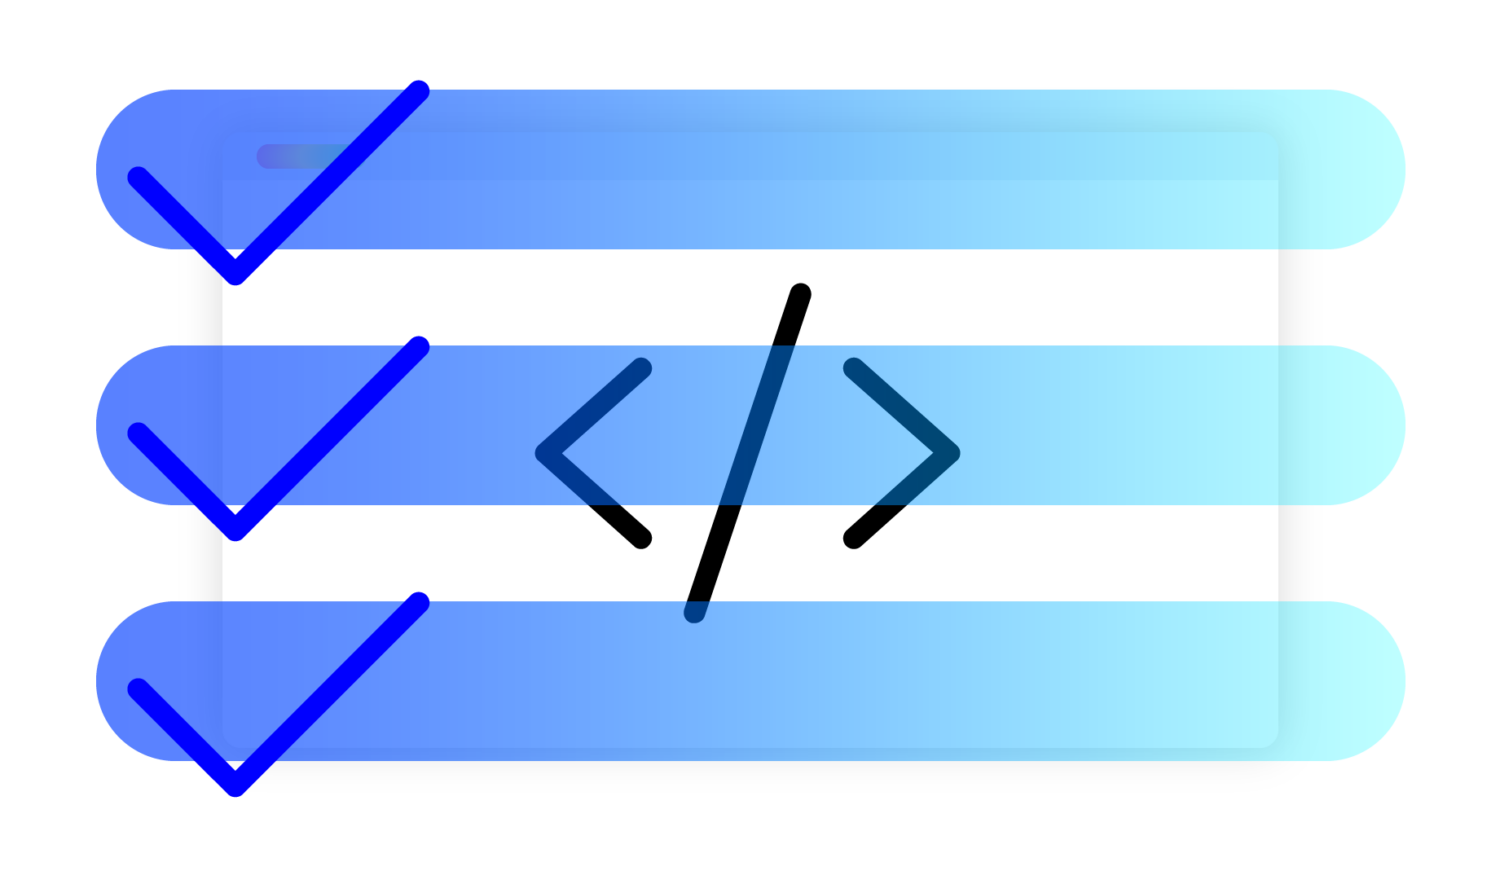 Eine Checkliste in Blautönen schwebt über einem Programmfenster mit Code.